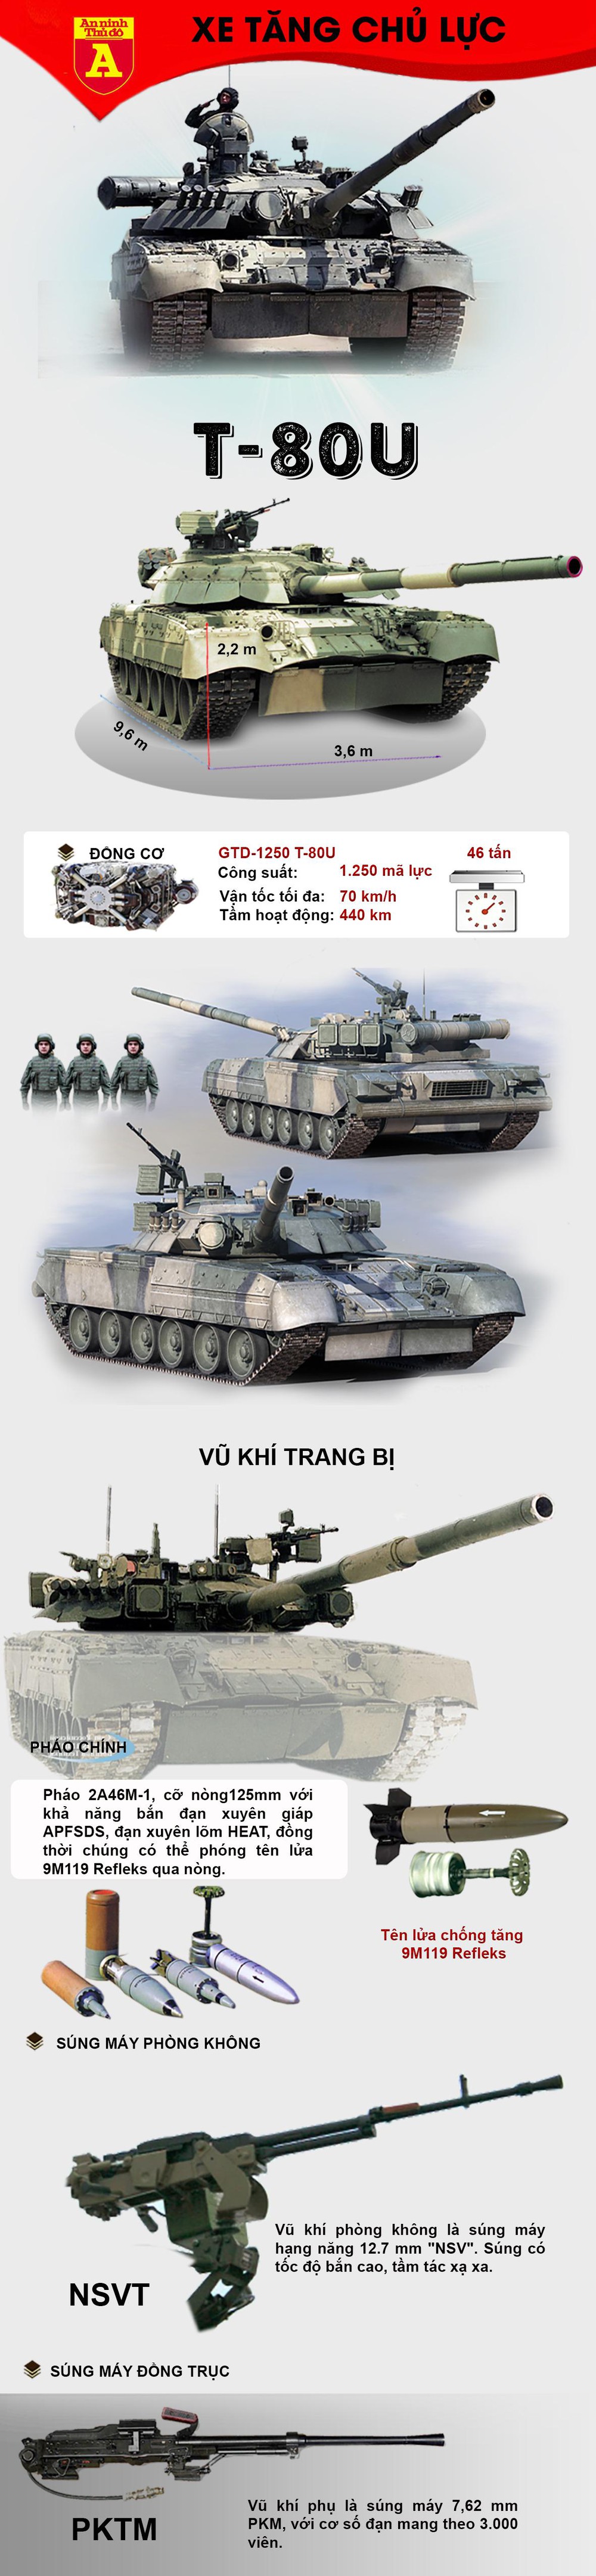 Tinh hoa công nghệ "xe tăng bay" T-80 - Ảnh 1